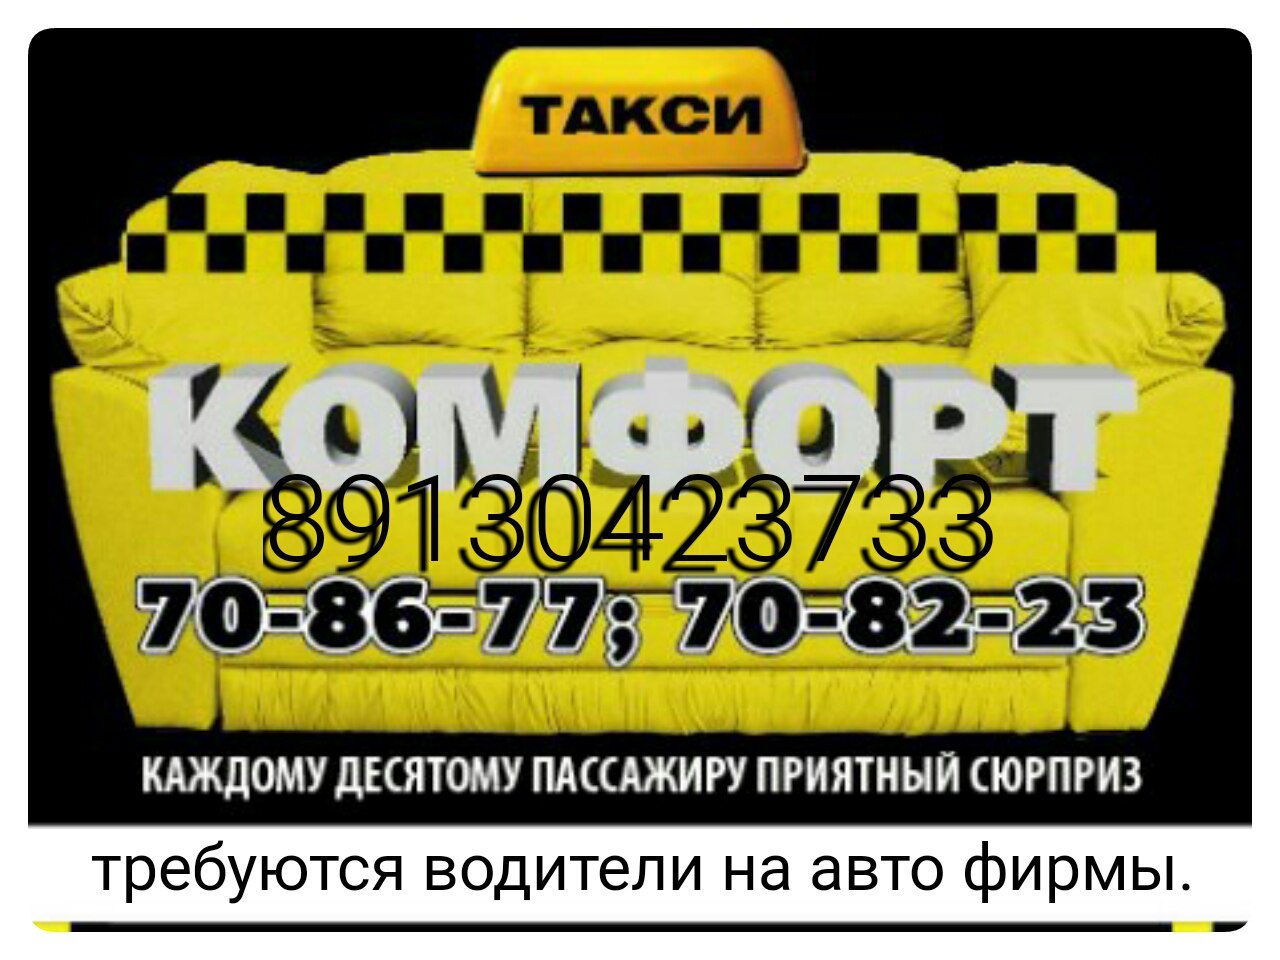 Такси назарова номера телефонов. Такси комфорт. Такси комфорт Норильск. Требуются водители в такси. Такси Железногорск.